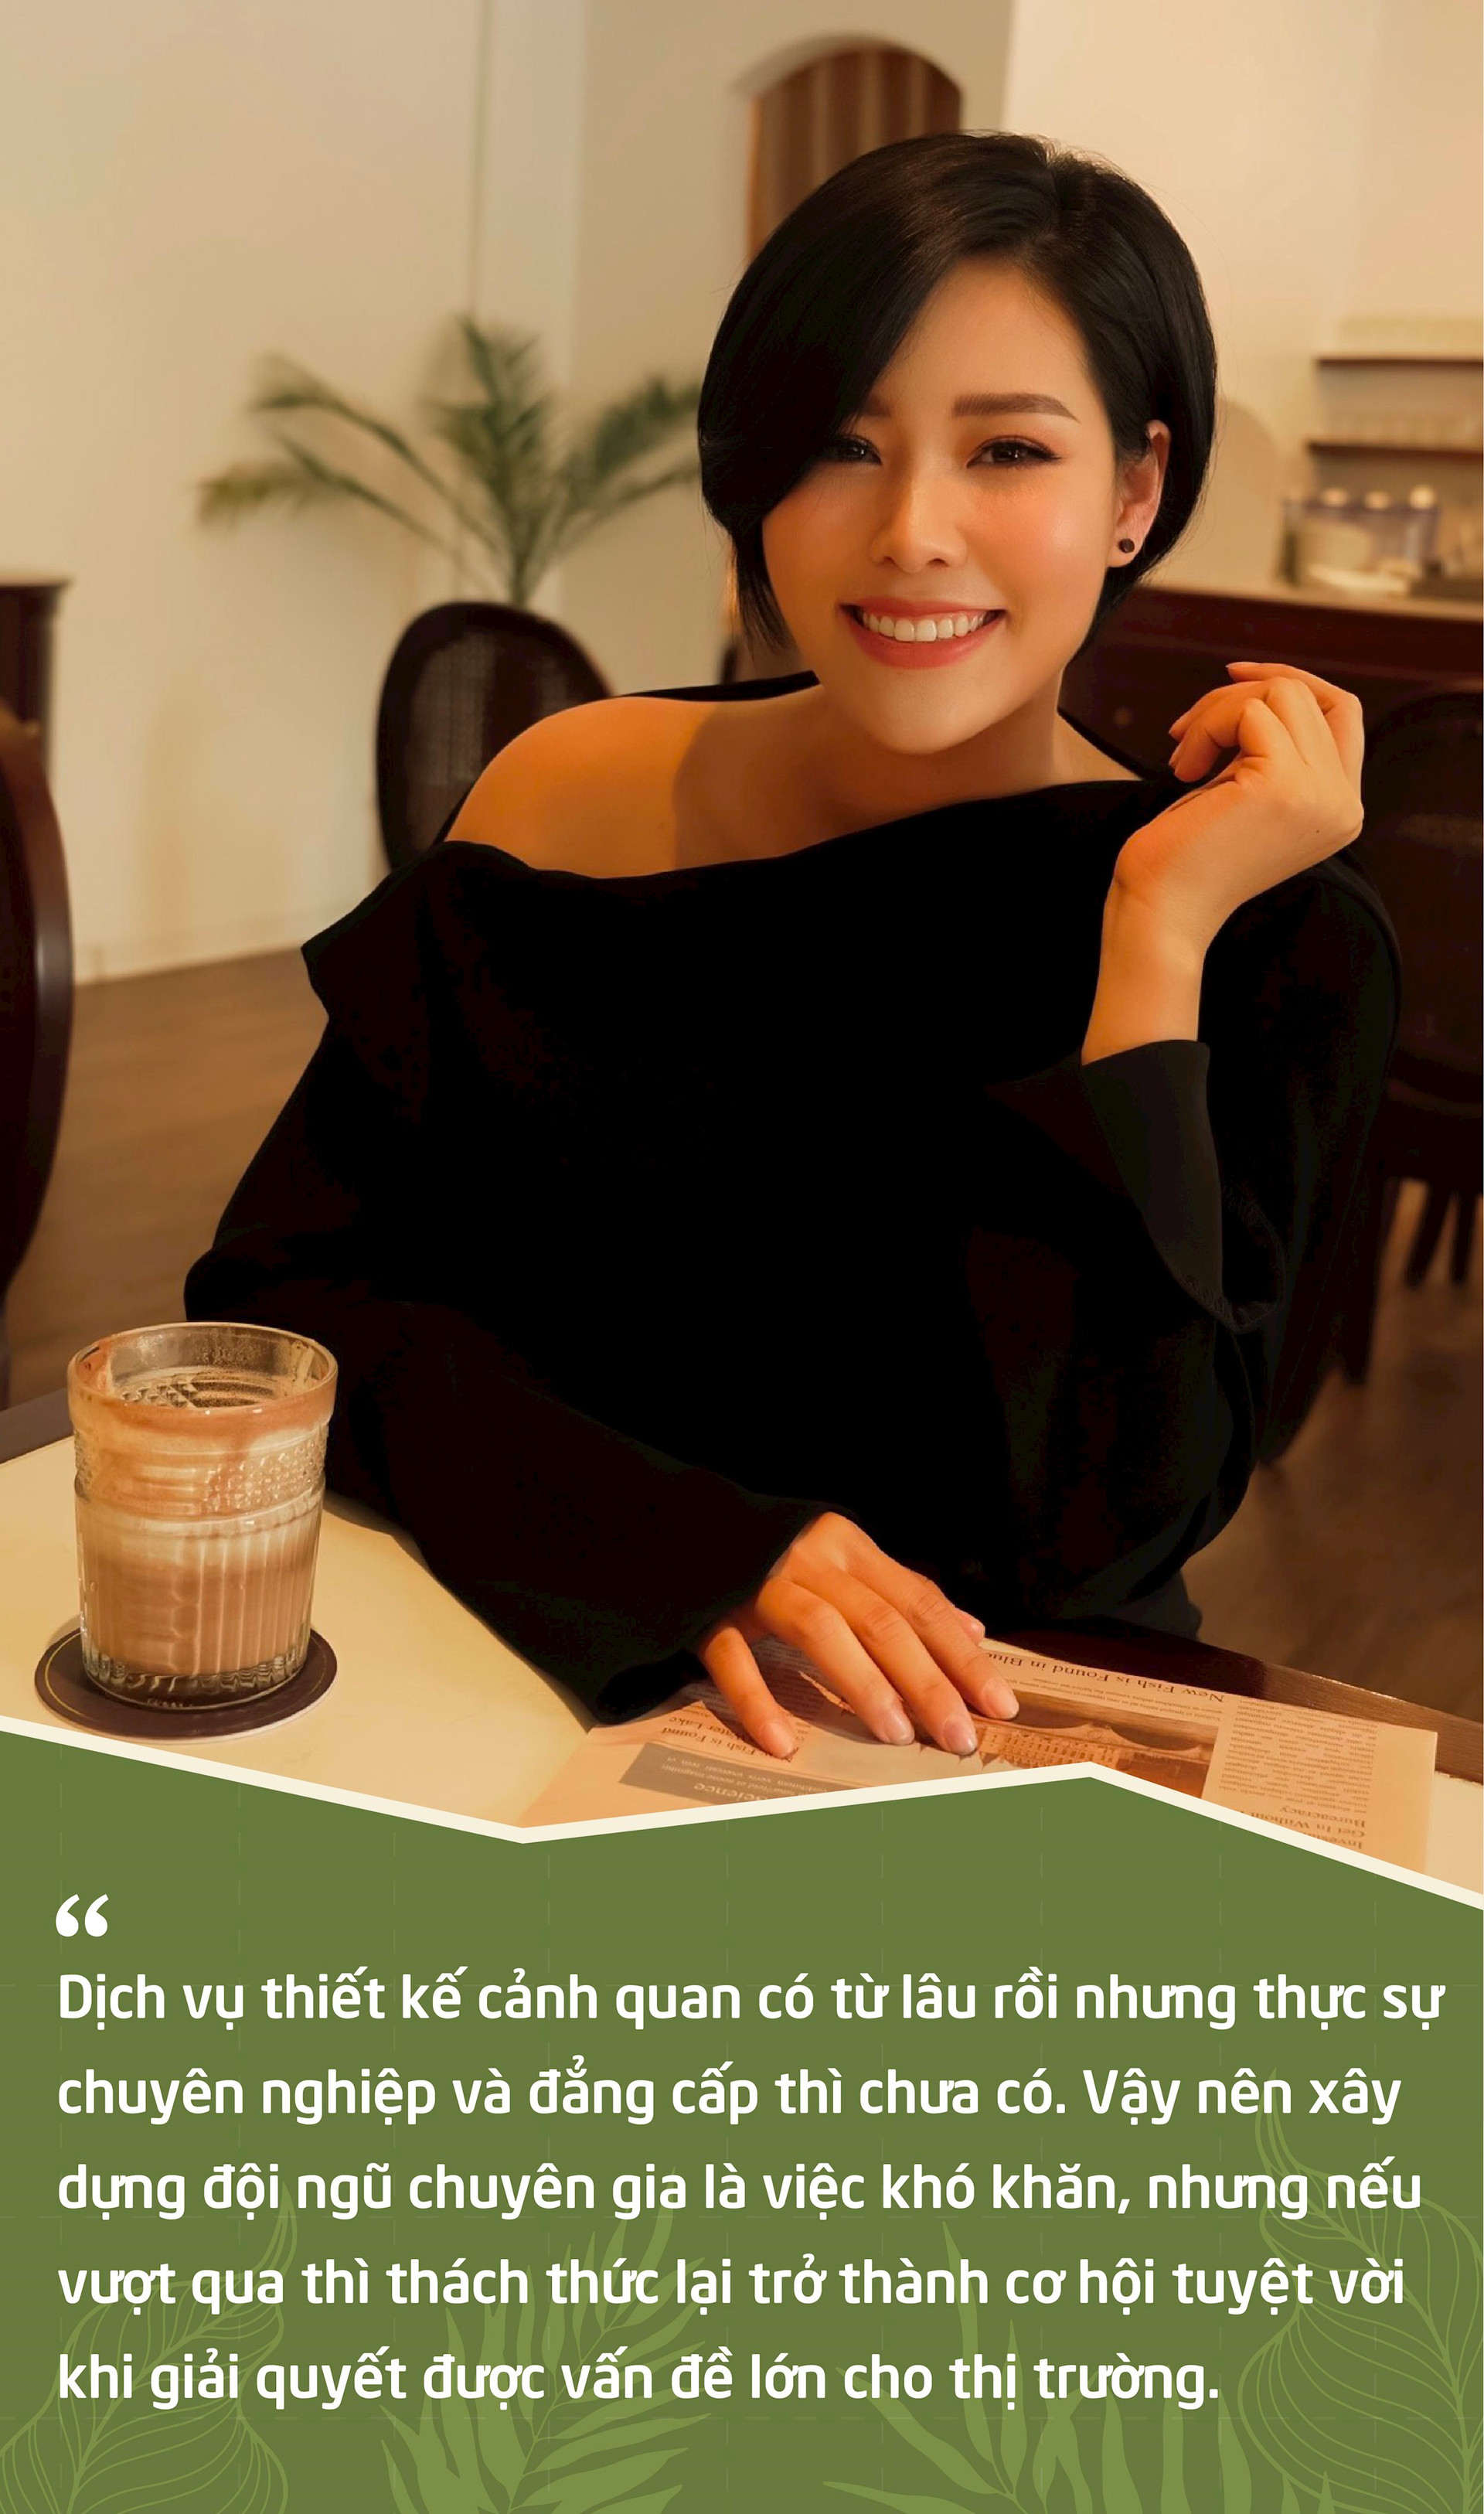 Từ kho nhỏ bán cây đến thương hiệu cà phê xanh có tiếng tại Hà Nội, CEO 8x kể chuyện chinh phục phân khúc cao cấp ở “ngách” mới, “tiền không phải vấn đề” với khách hàng - Ảnh 13.